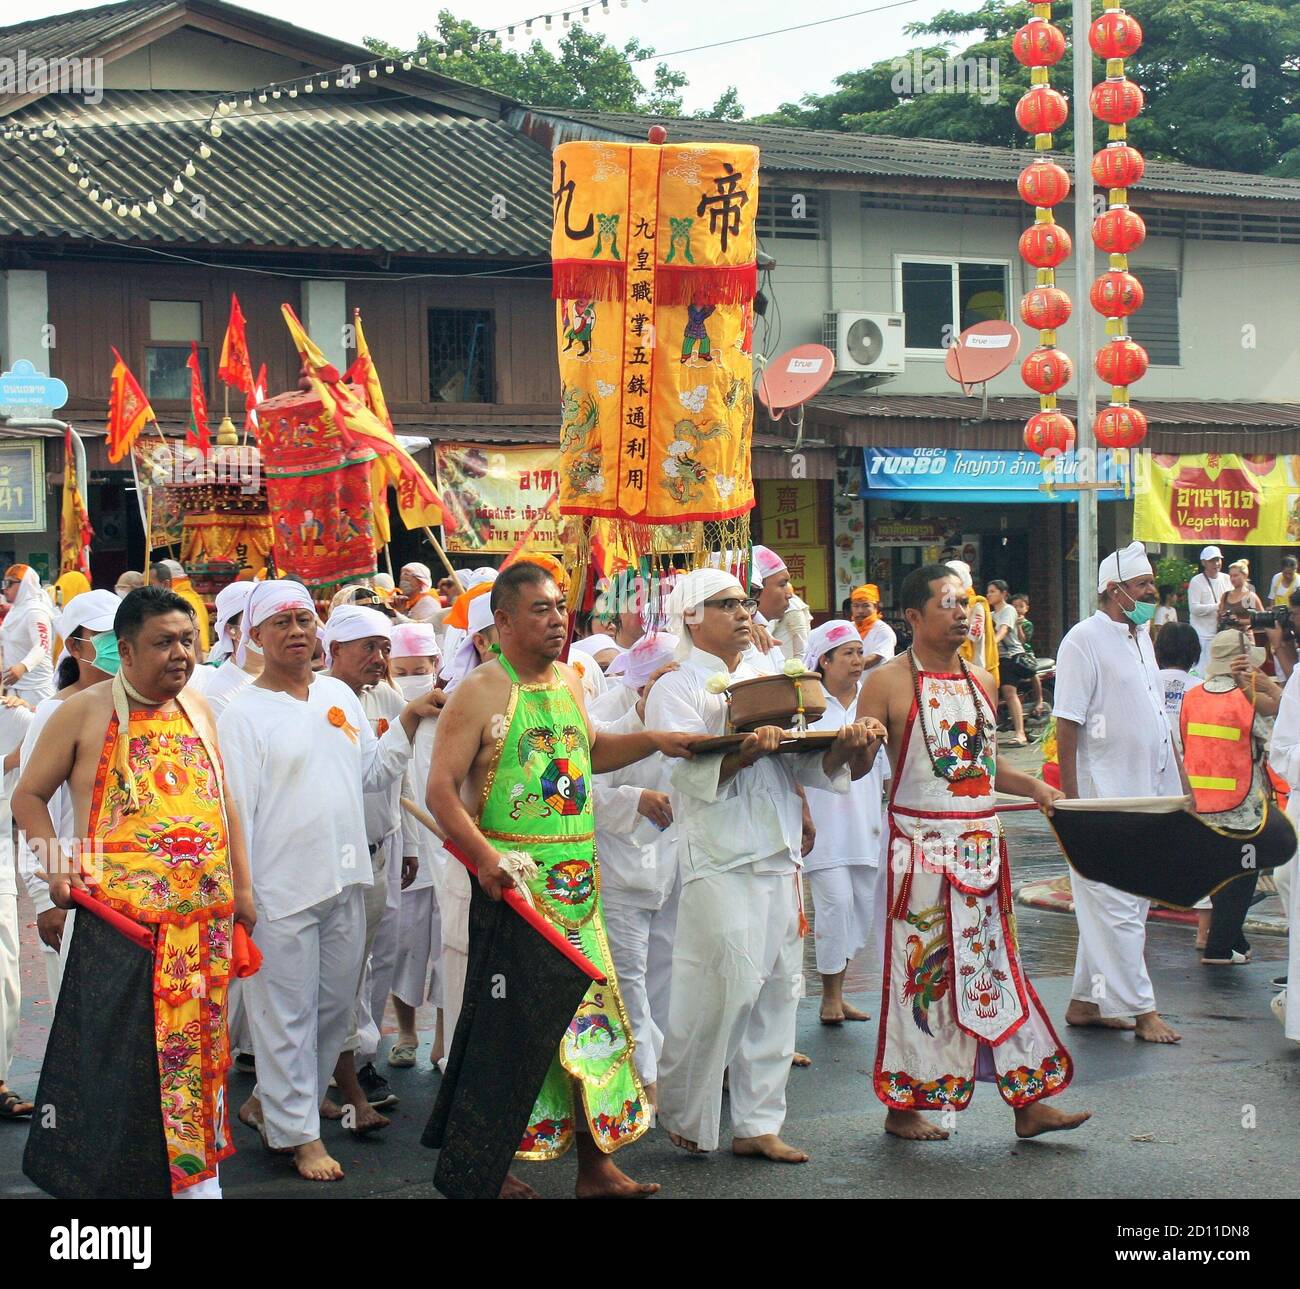 Phuket Stadt / Thailand - 7. Oktober 2019: Nine Emperor Gods Festival oder Phuket Vegetarian Festival Parade, Prozession mit taoistischen Anhängern in traditio Stockfoto